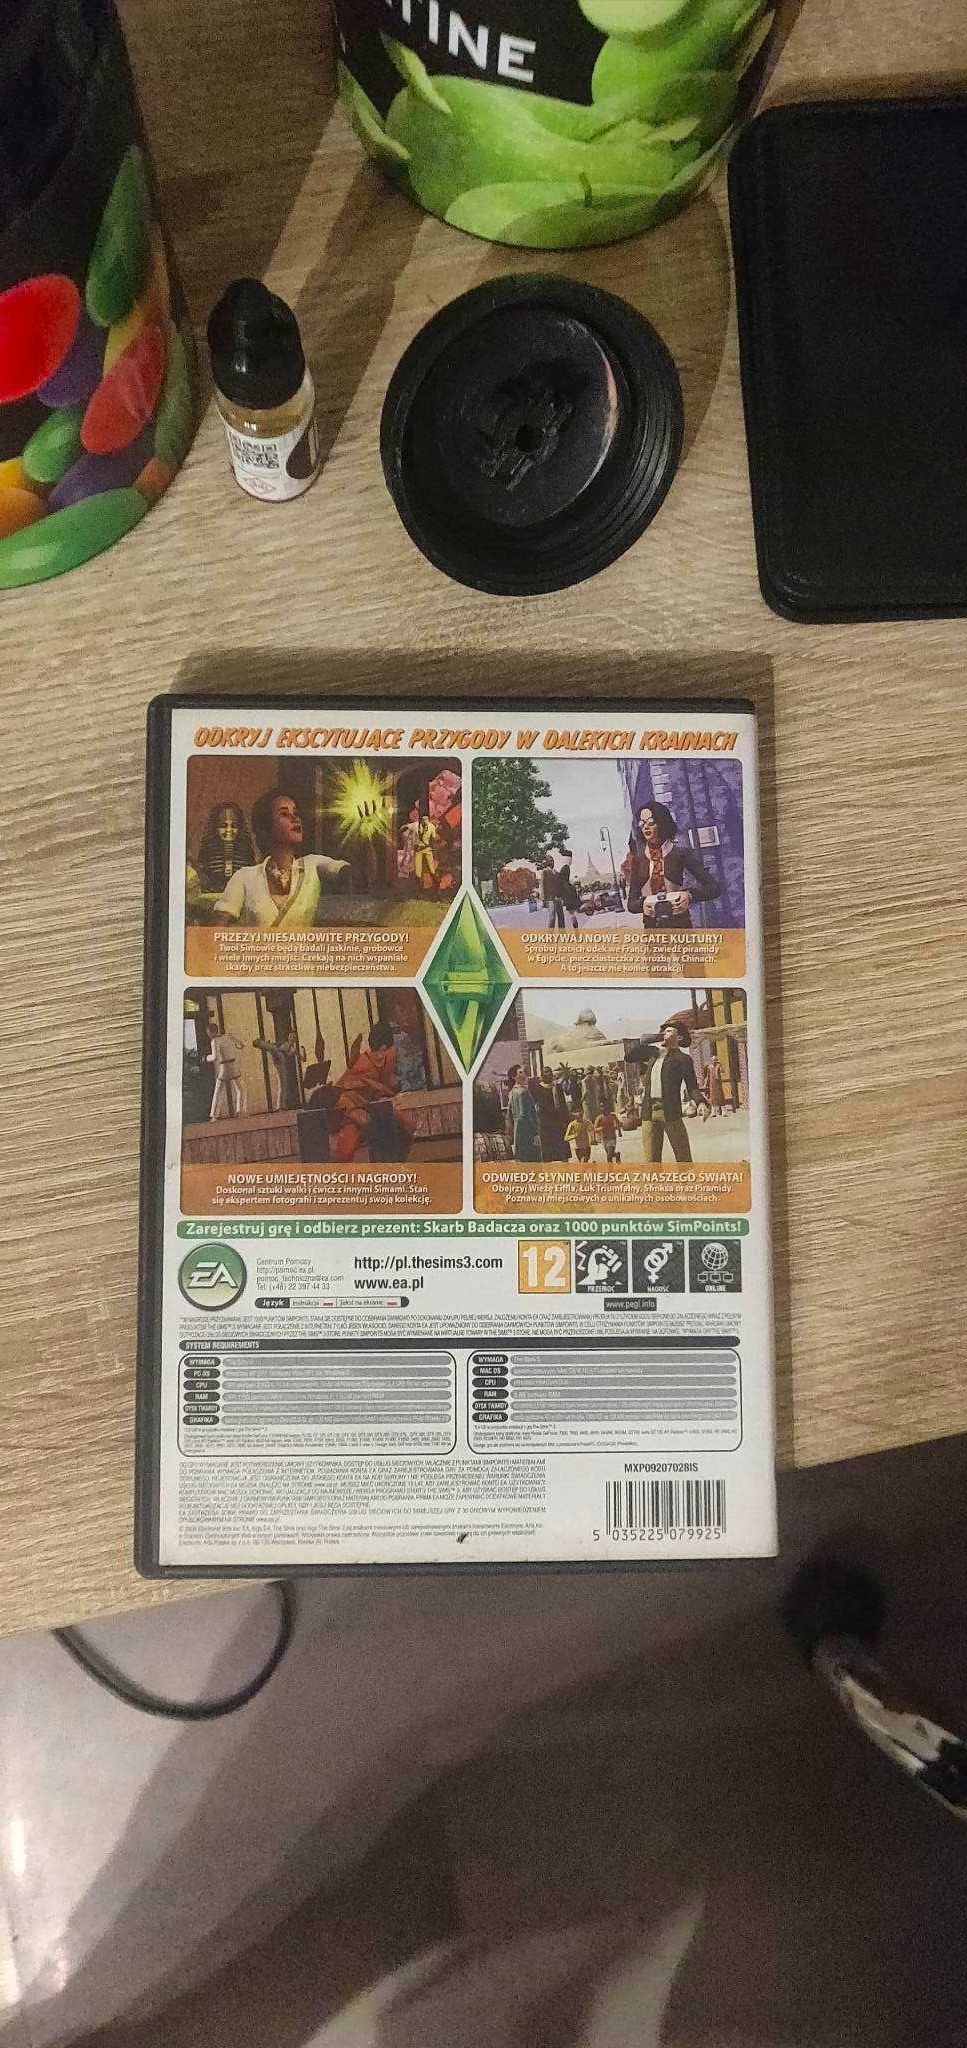 GRA PC Dodatek do Sims 3 Wymarzone Podróże